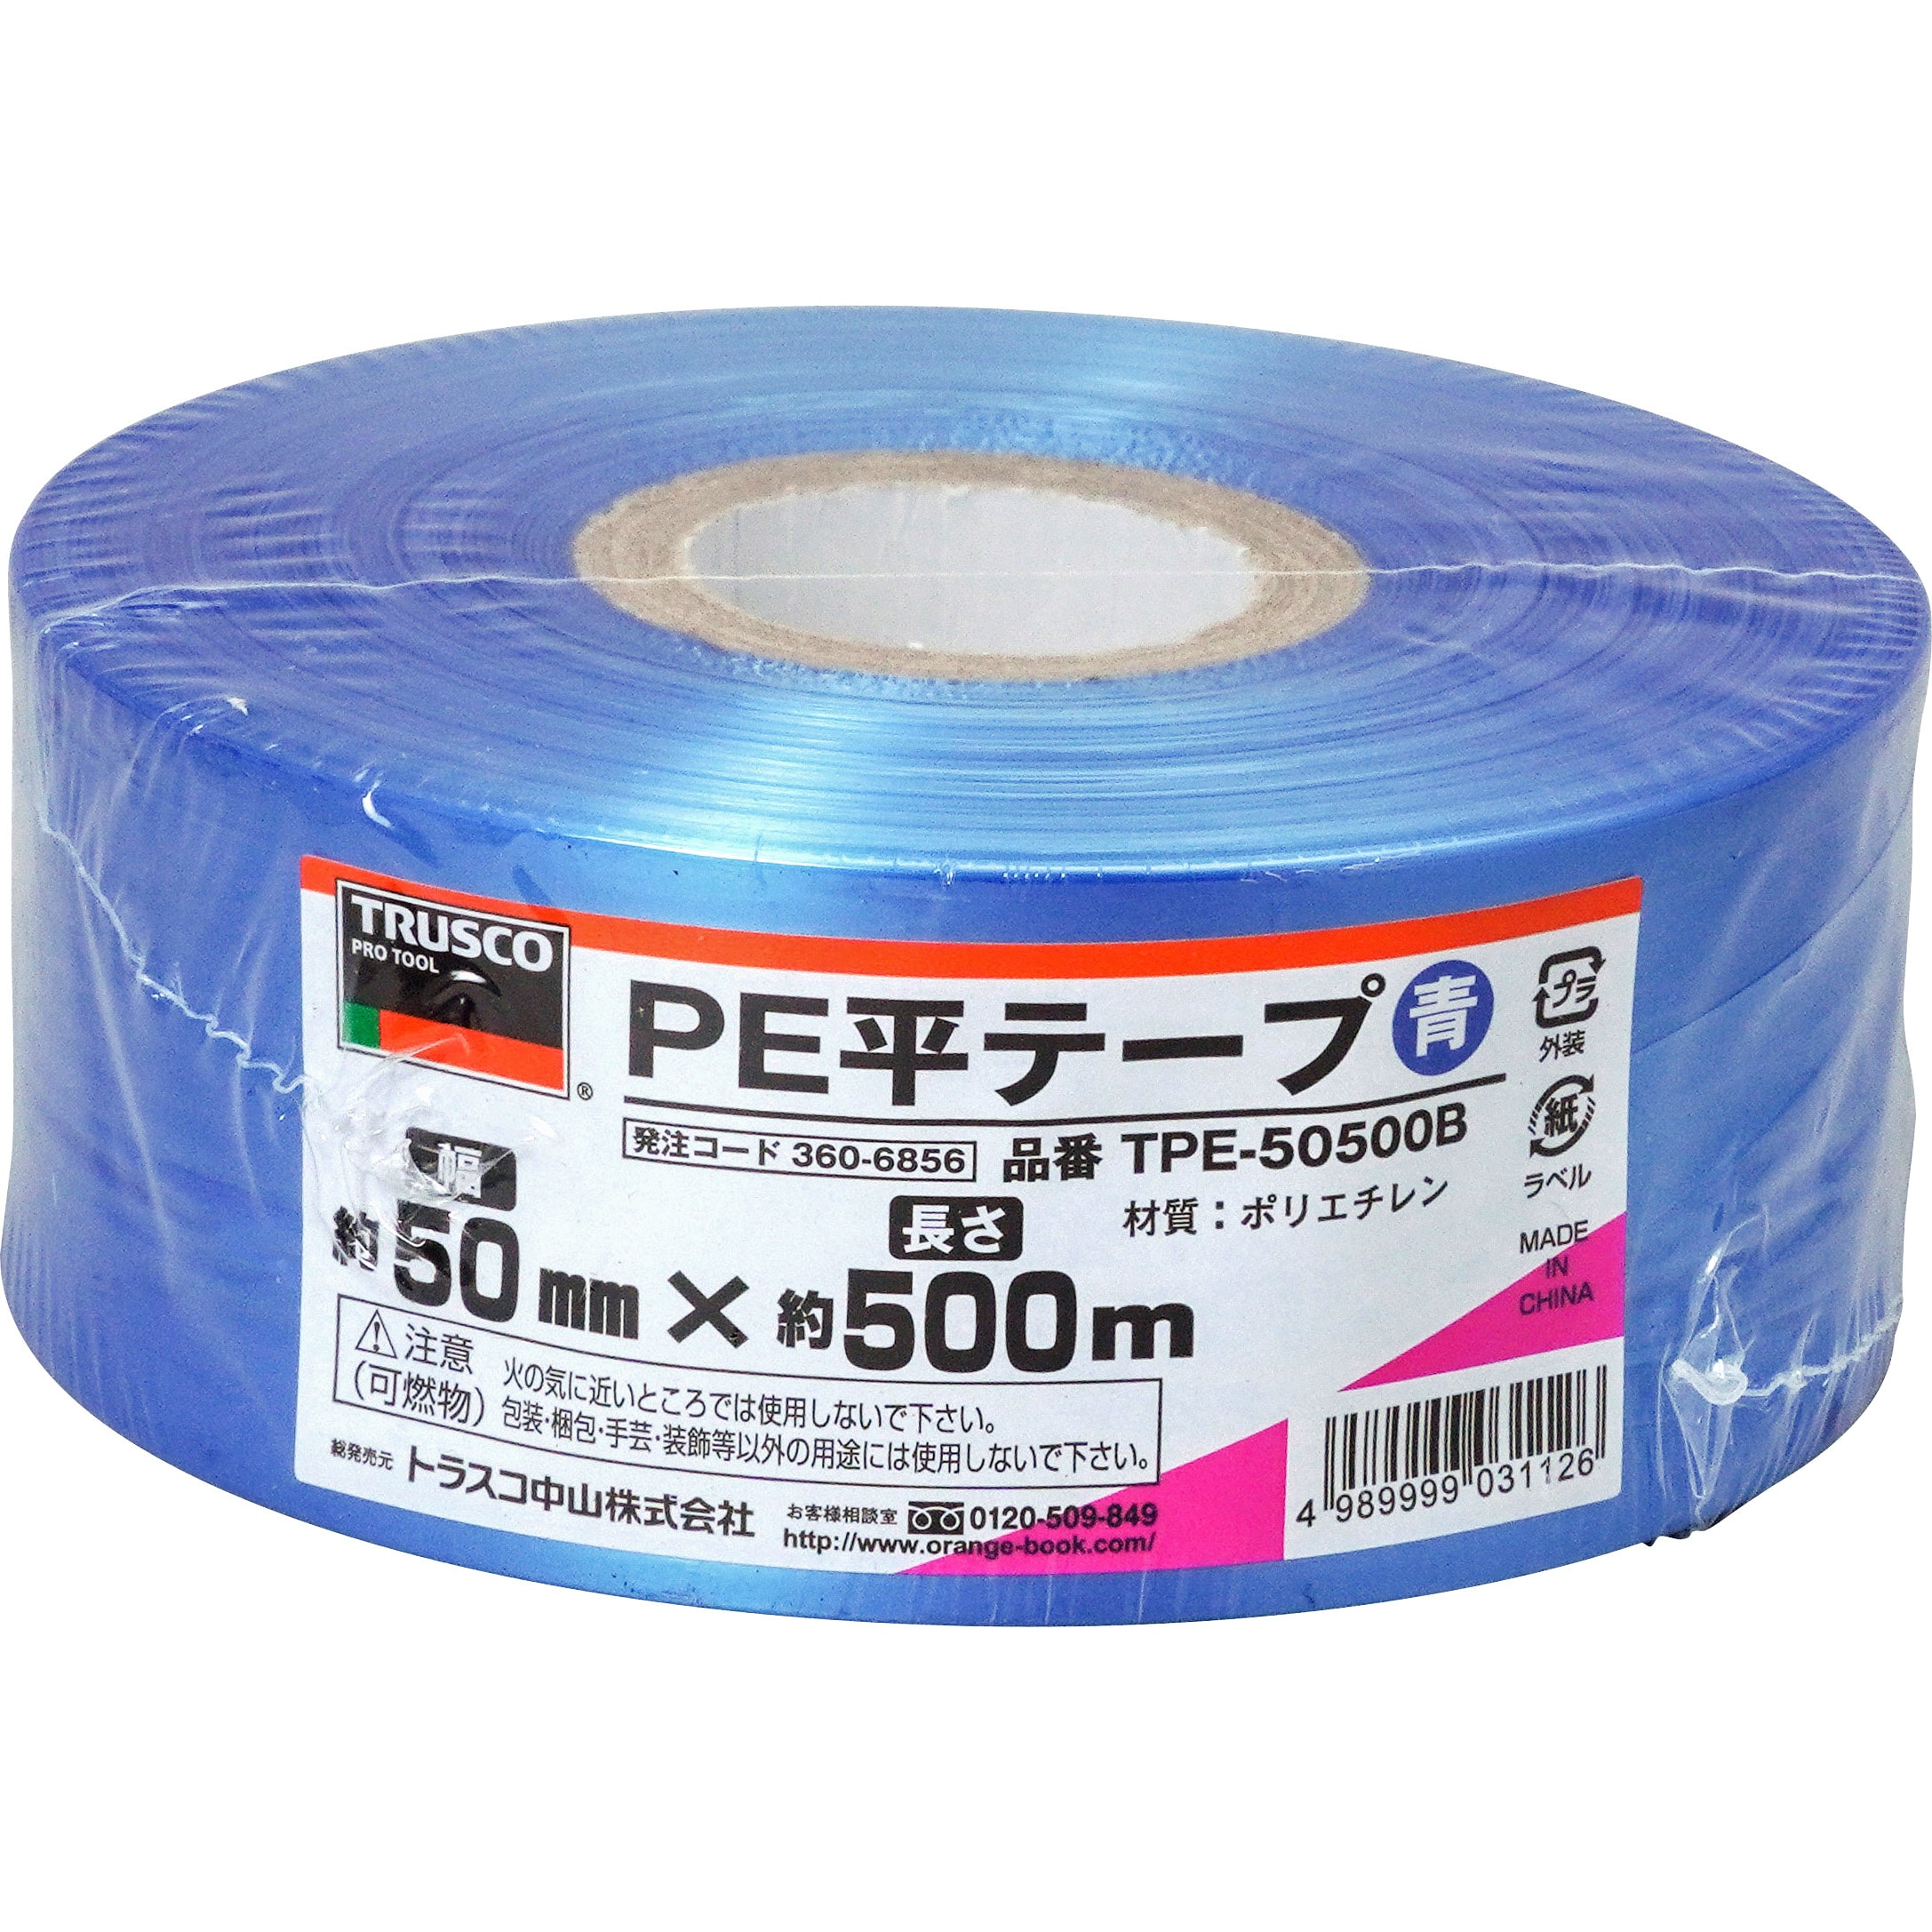 ローヤルシルバーテープ平巻ピンク50mm約500m30巻 - 5